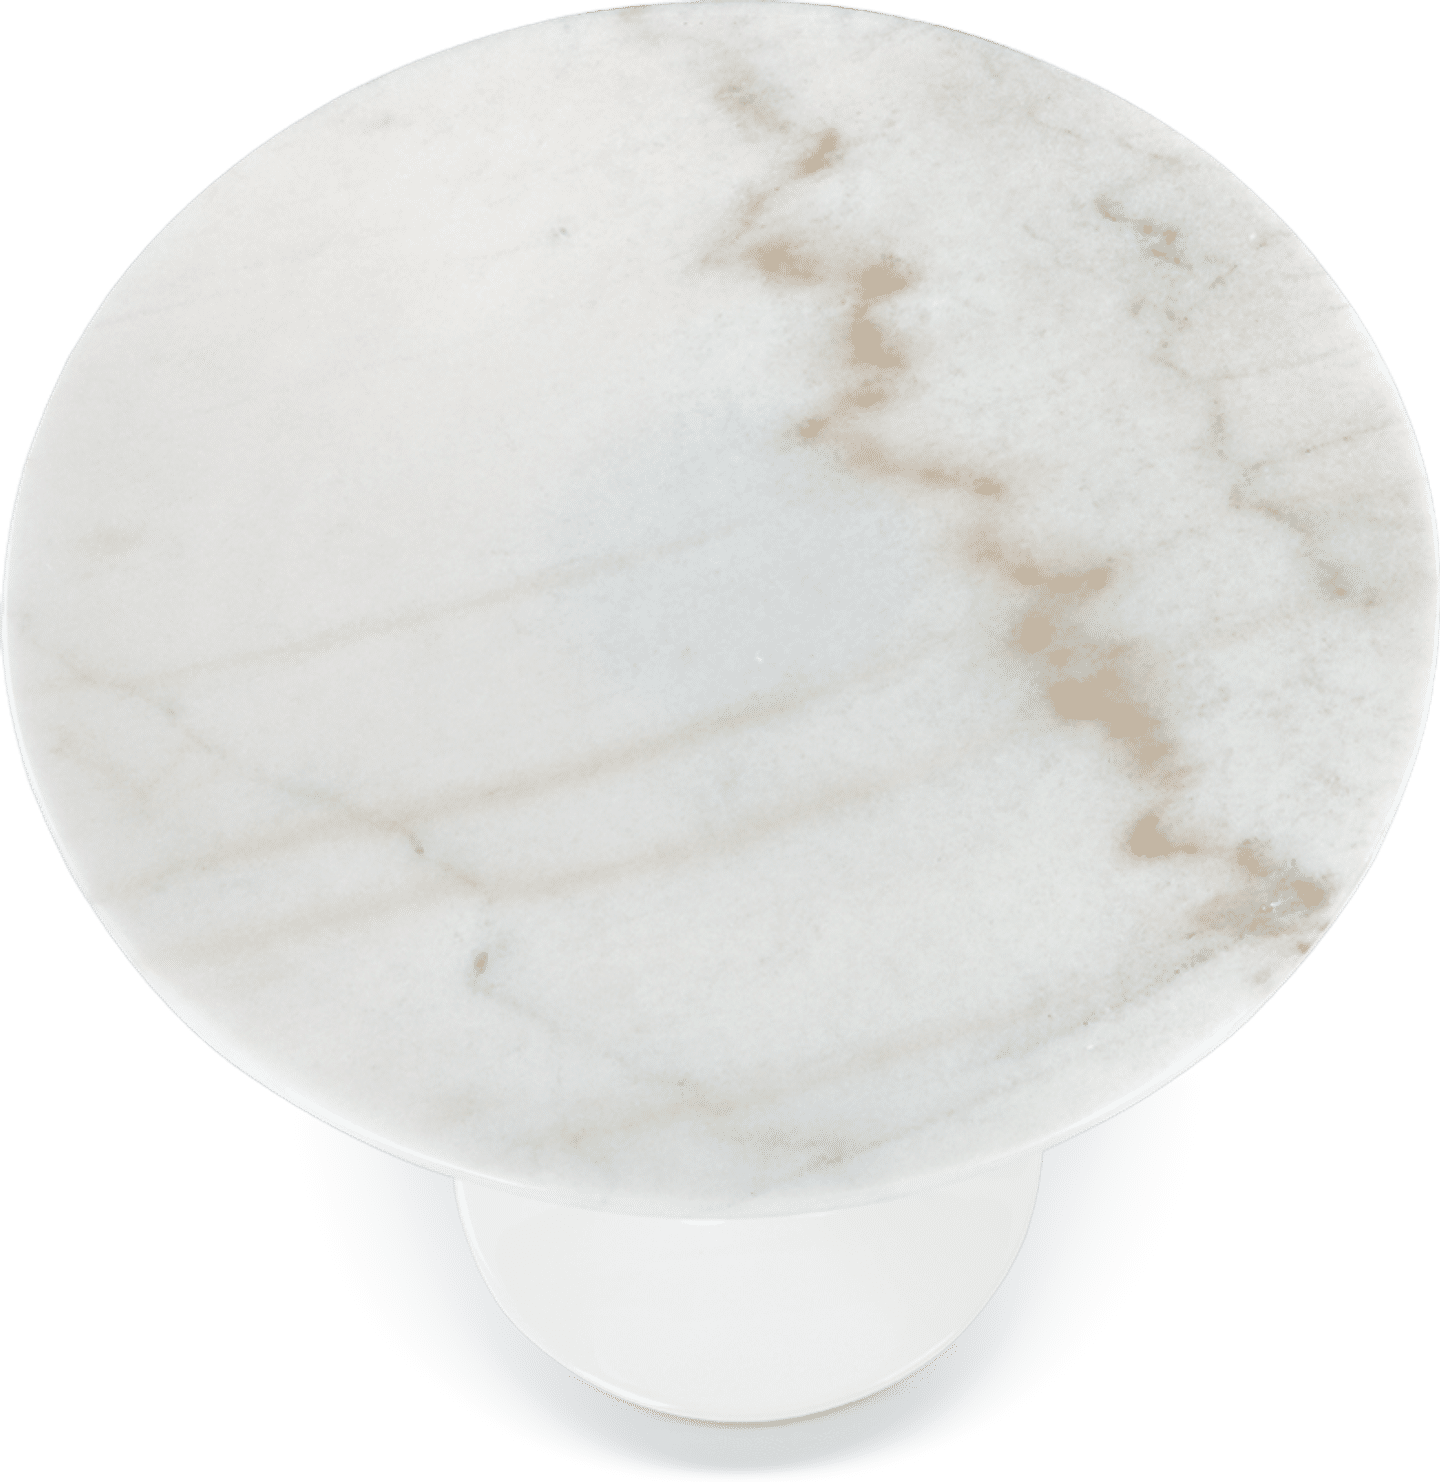 Tulip Runder Beistelltisch - Marmor Marble/White Marble image.